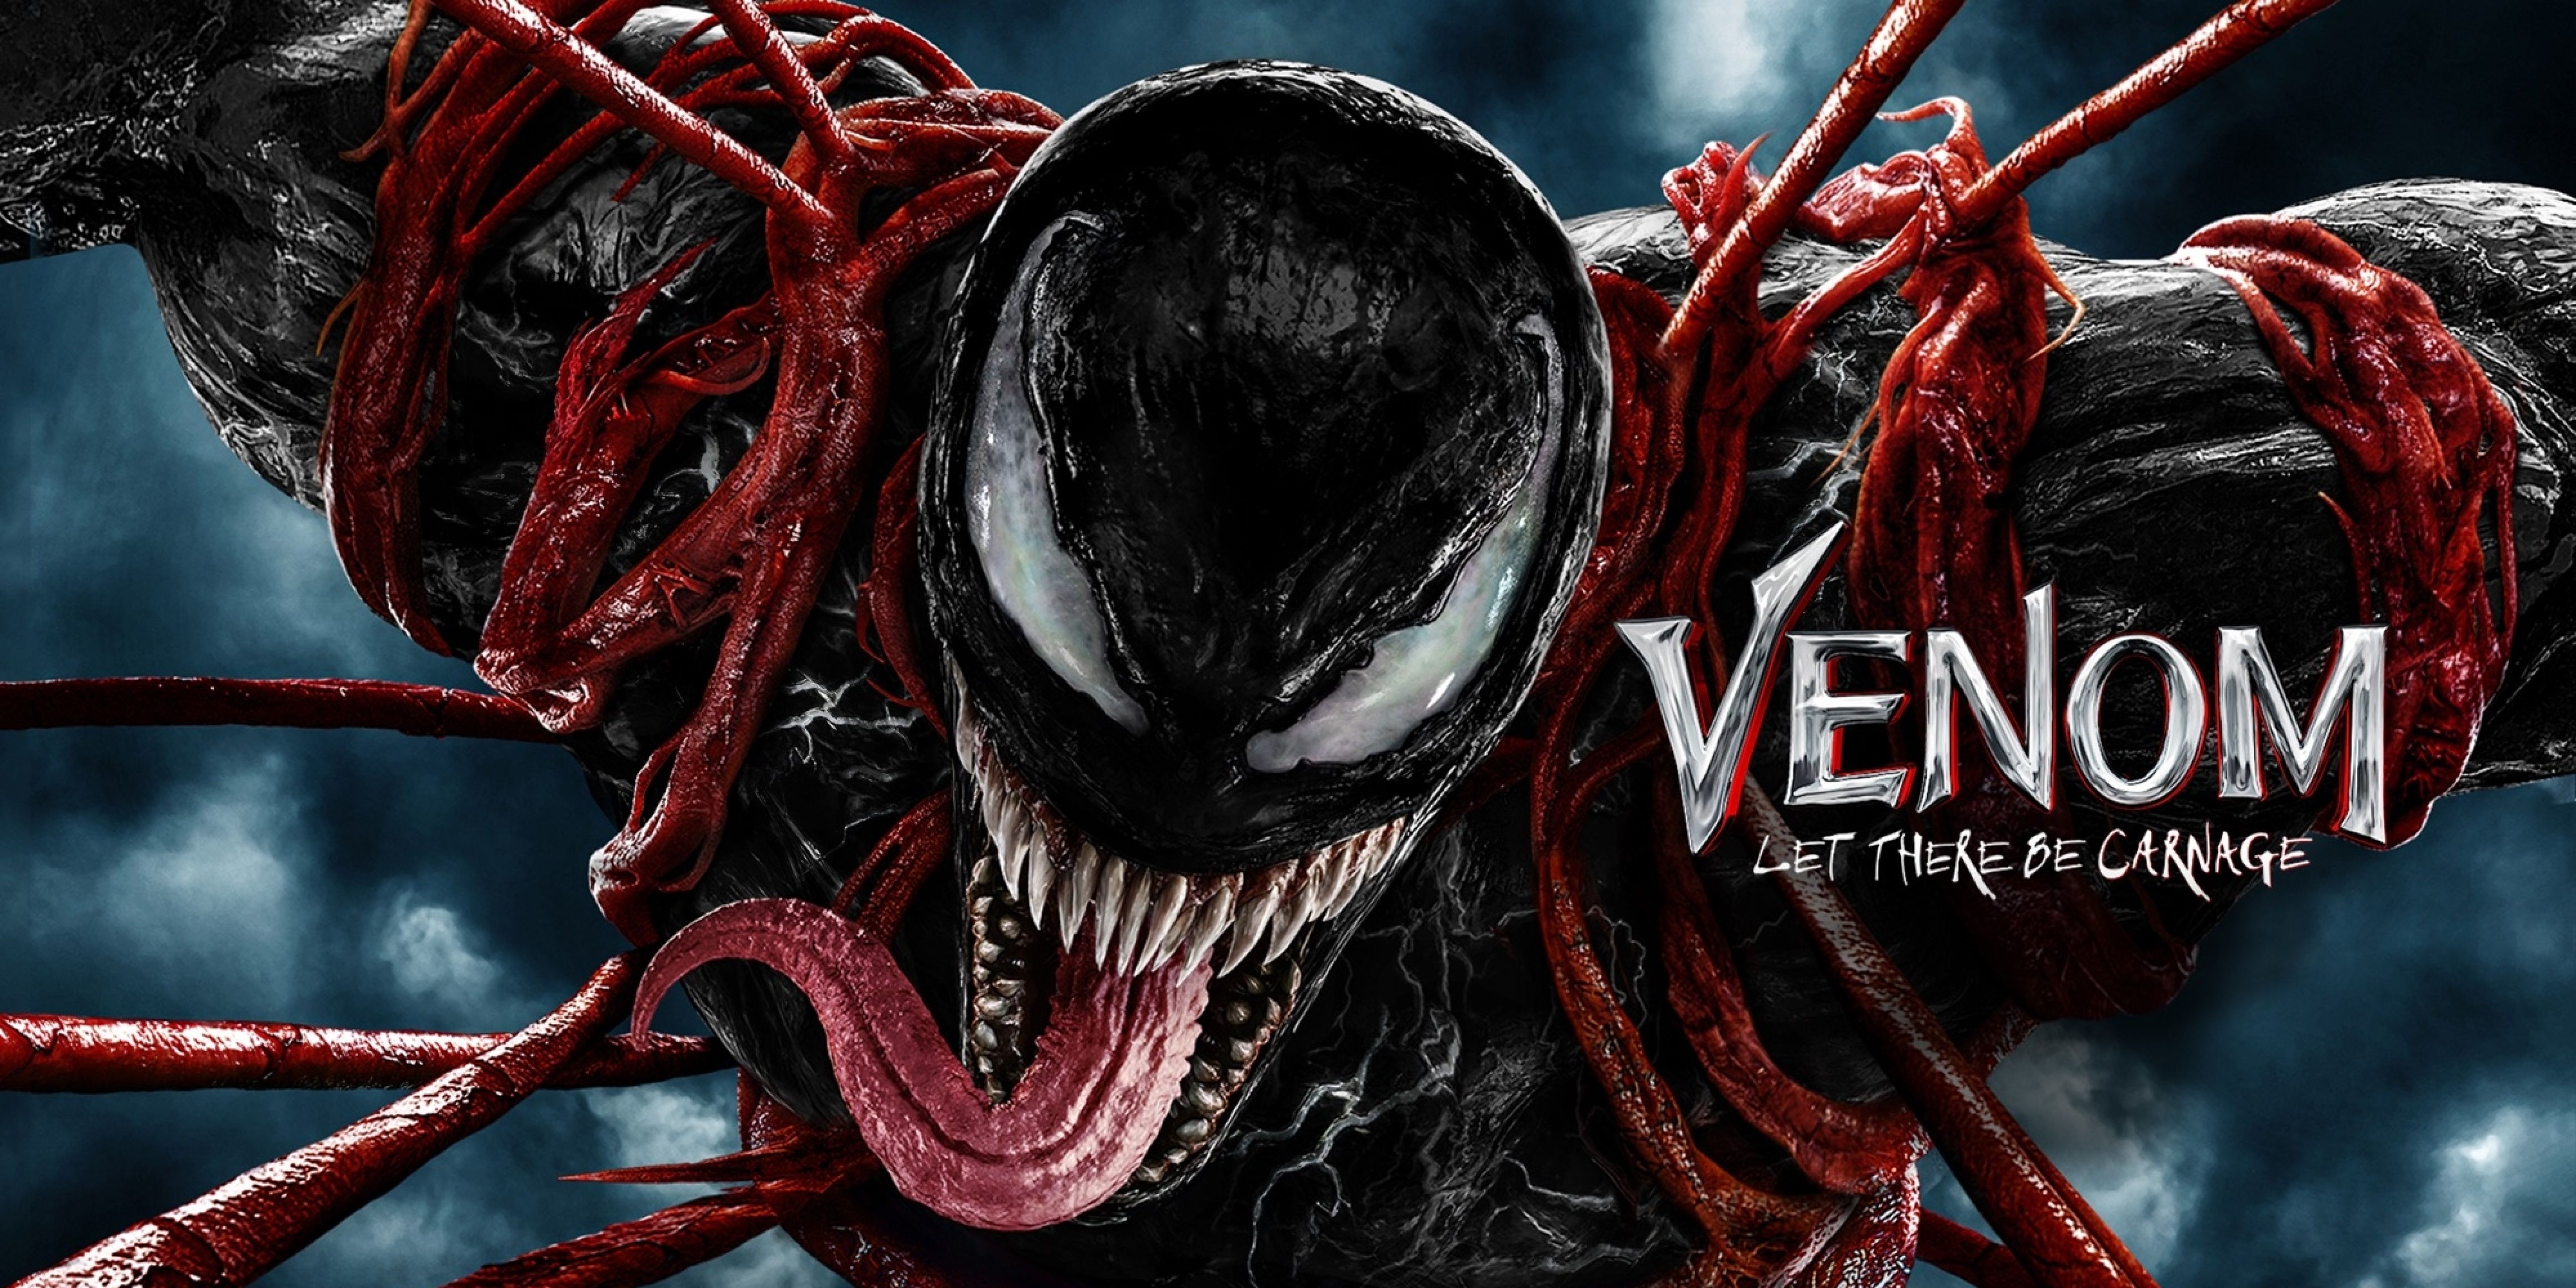 Веном 1 2 часть. Постеры Веном 2 - Venom Let there be Carnage (2021).